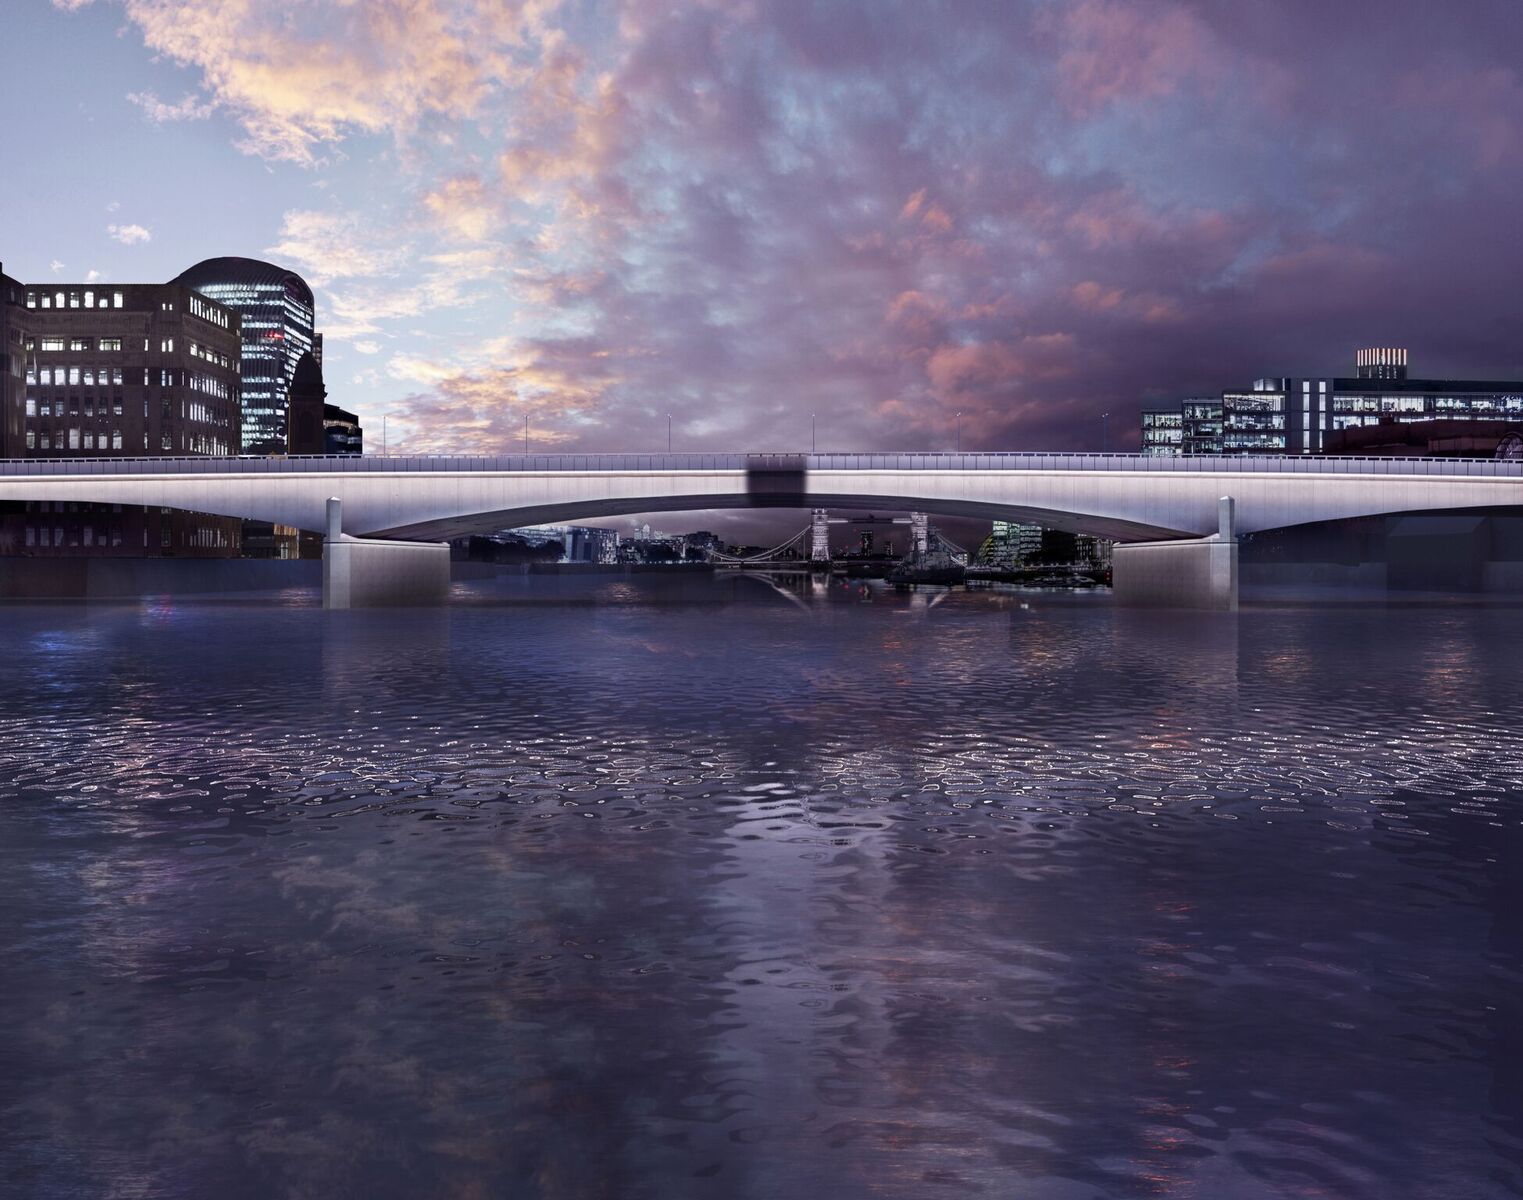 Heure magique presque au crépuscule - London Bridge, London, UK © MRC and Diller Scofidio + Renfro